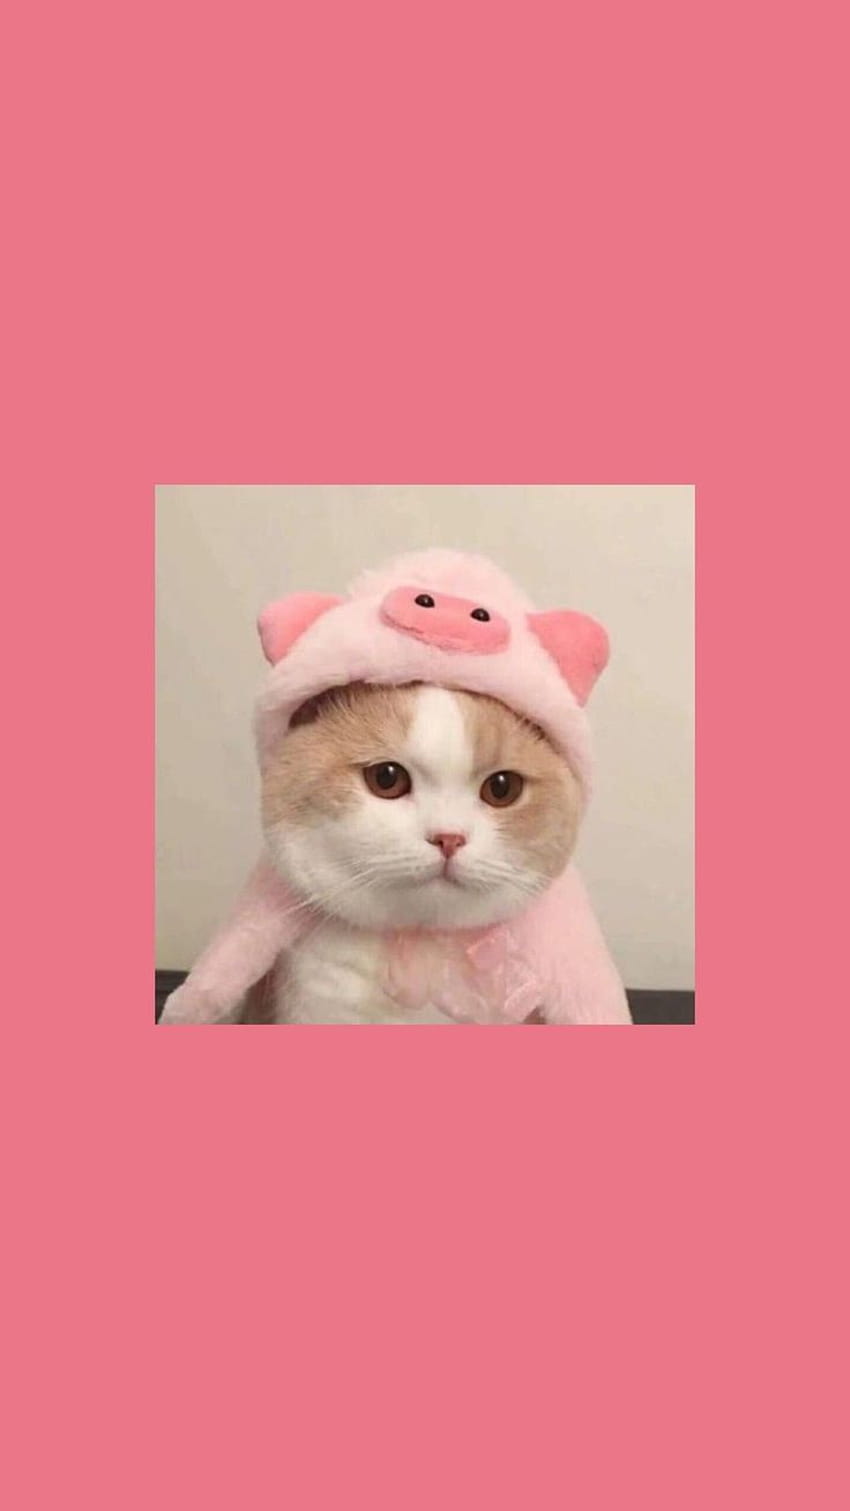 Cat in a pig costume - Cat